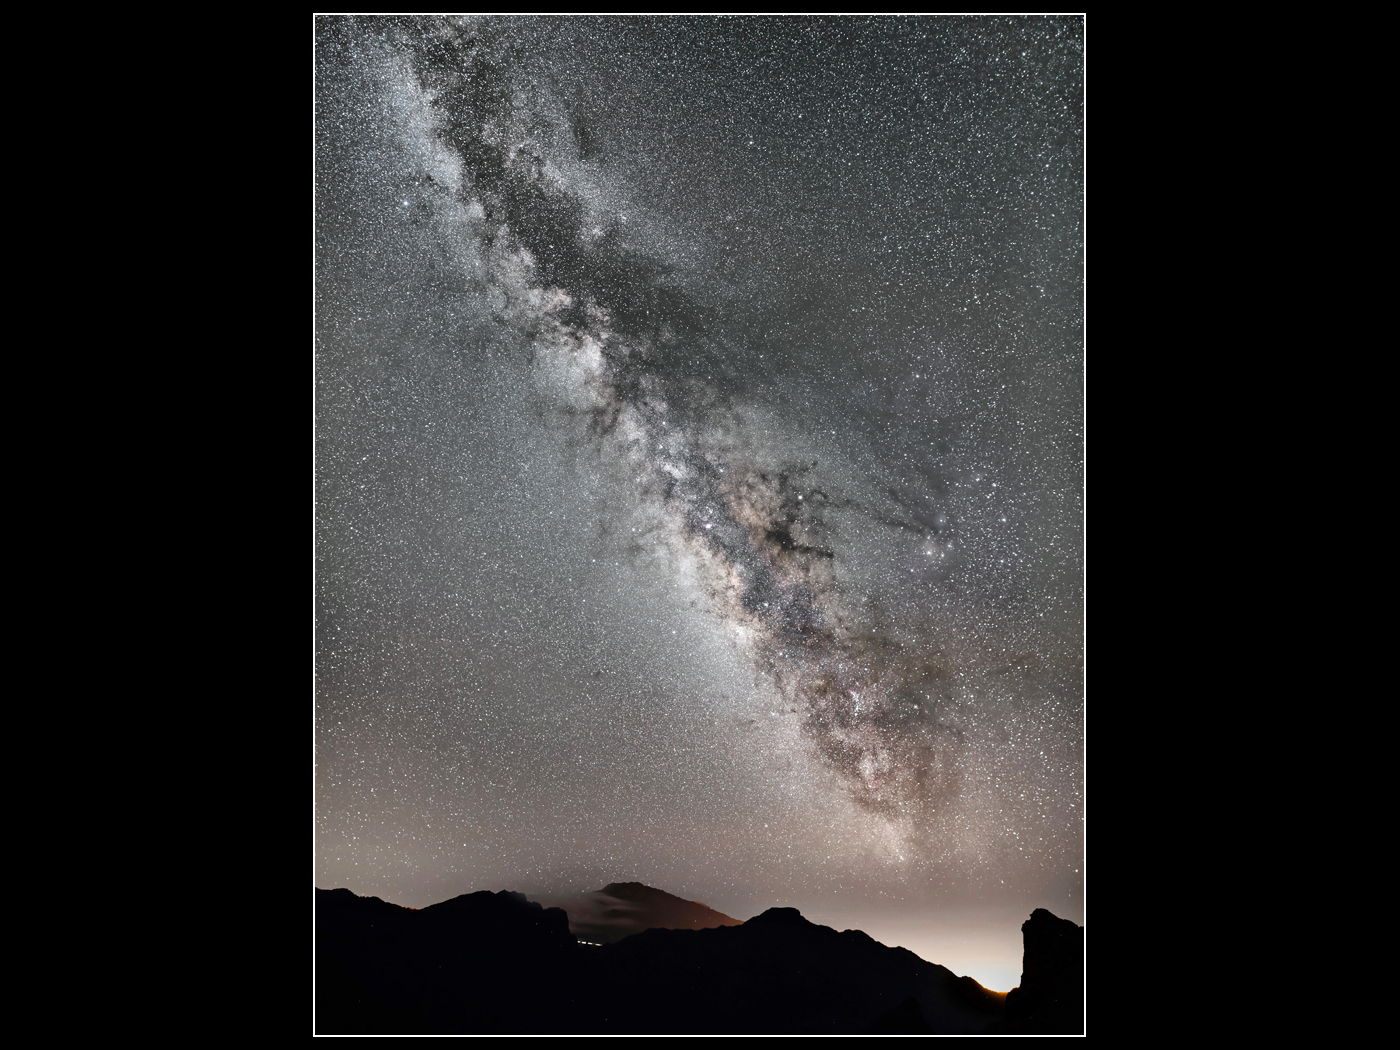 Milky Way over La Palma by David Tolliday